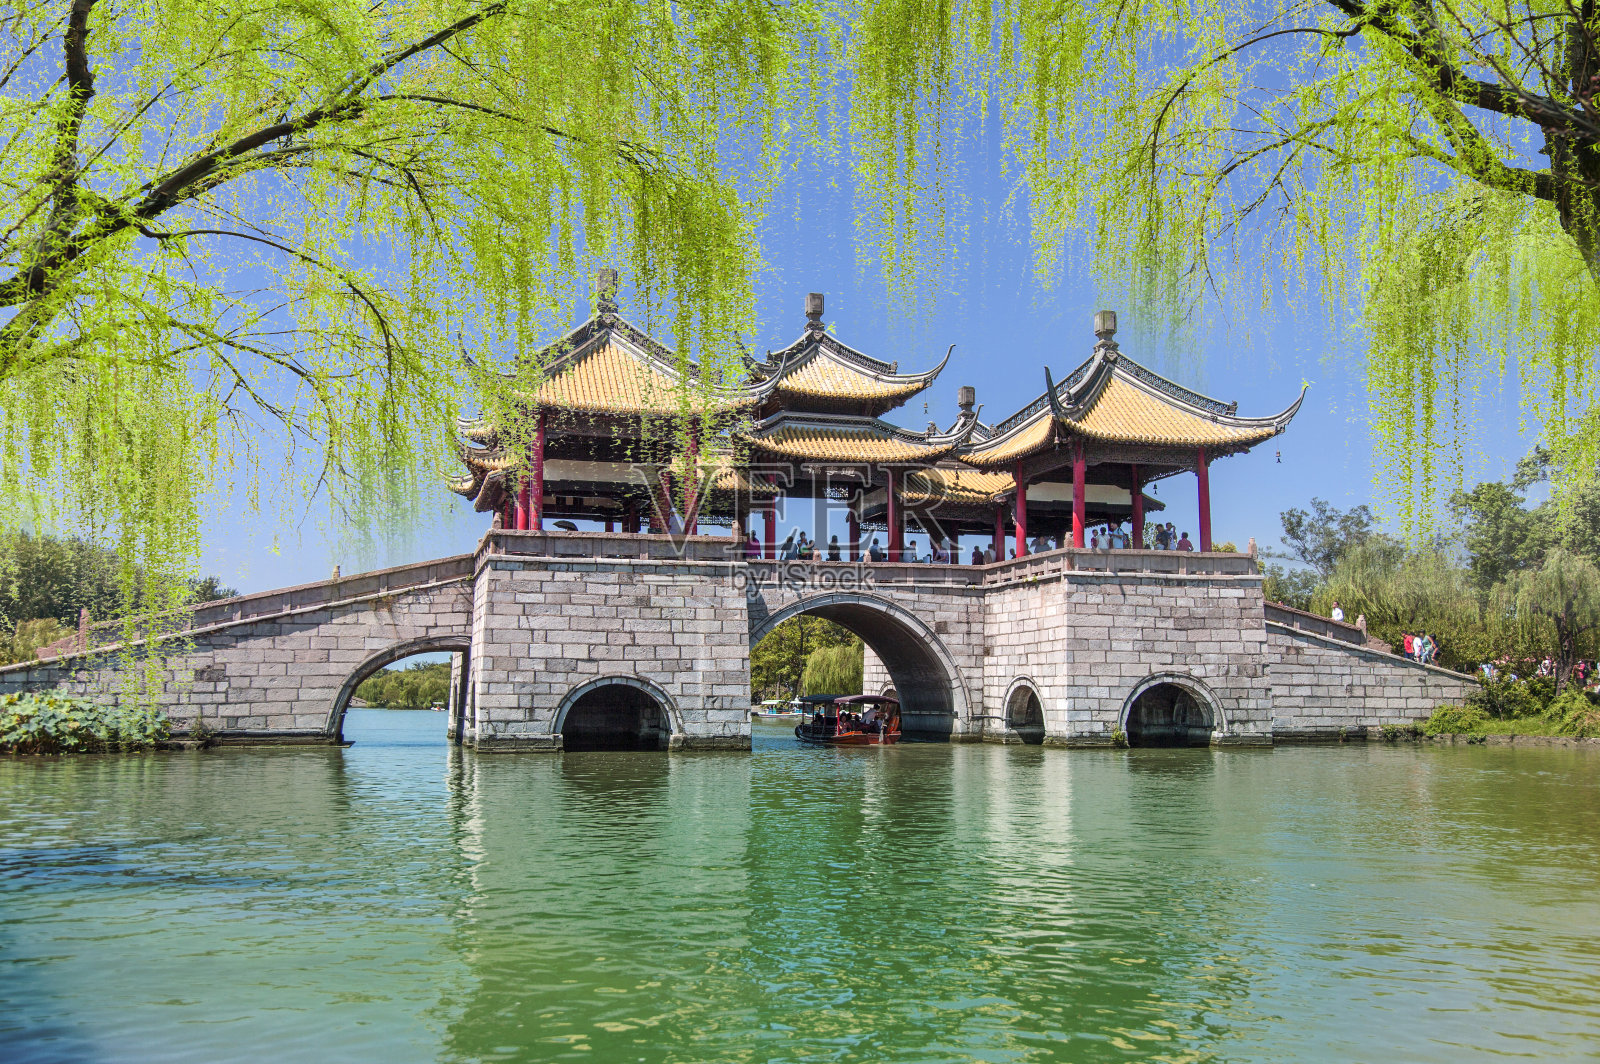 五亭桥,桥梁,桥,瘦西湖,扬州,江苏省,中国,亚洲照片摄影图片